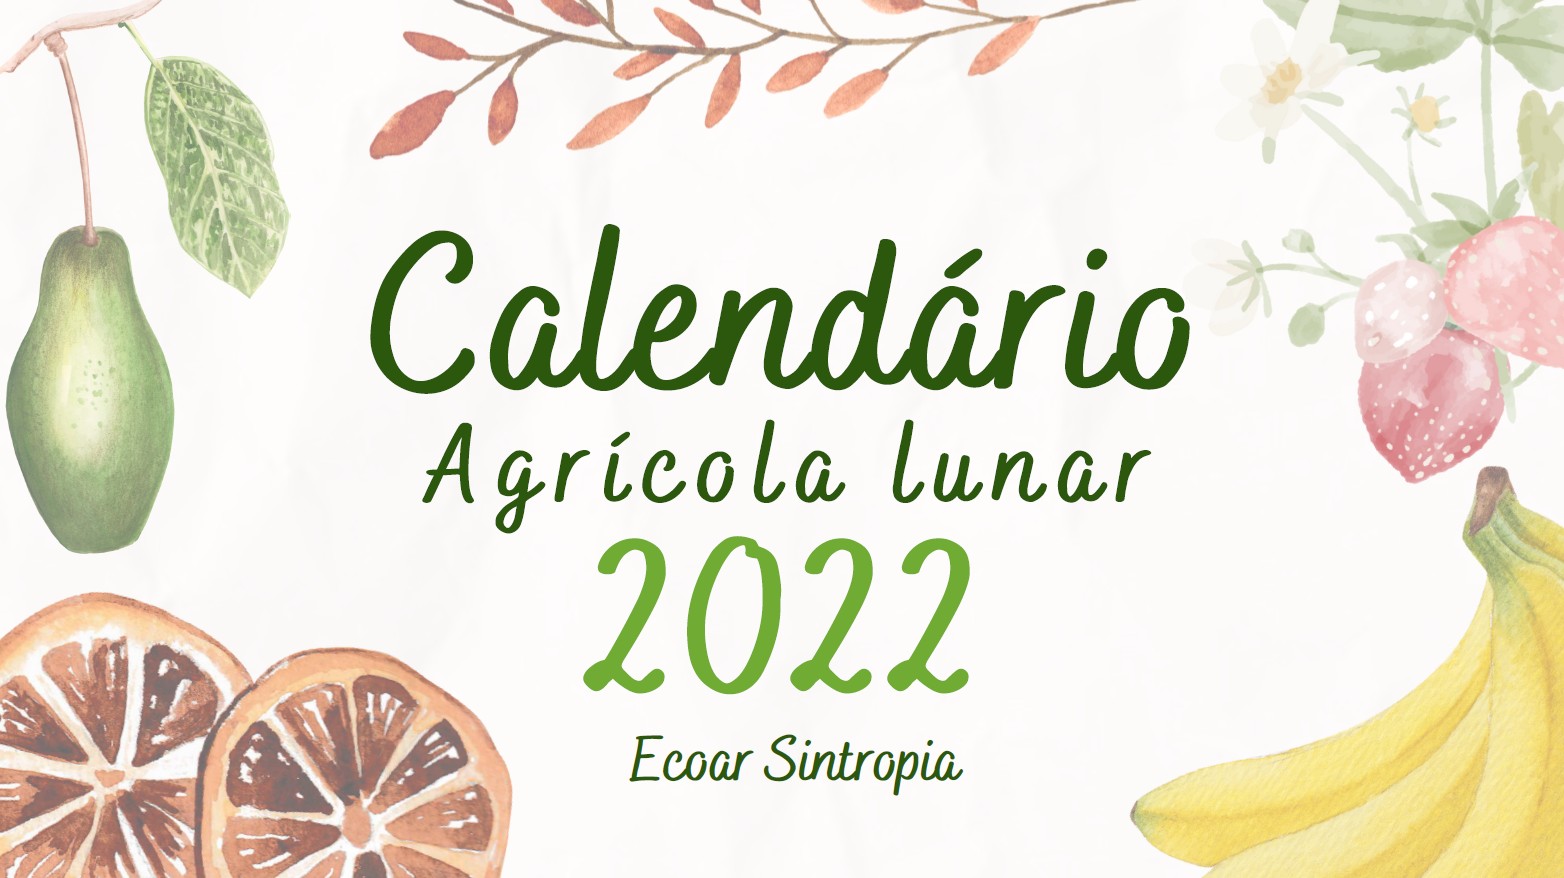 Calendário Agrícola Lunar 2022 – Ecoar Sintropia